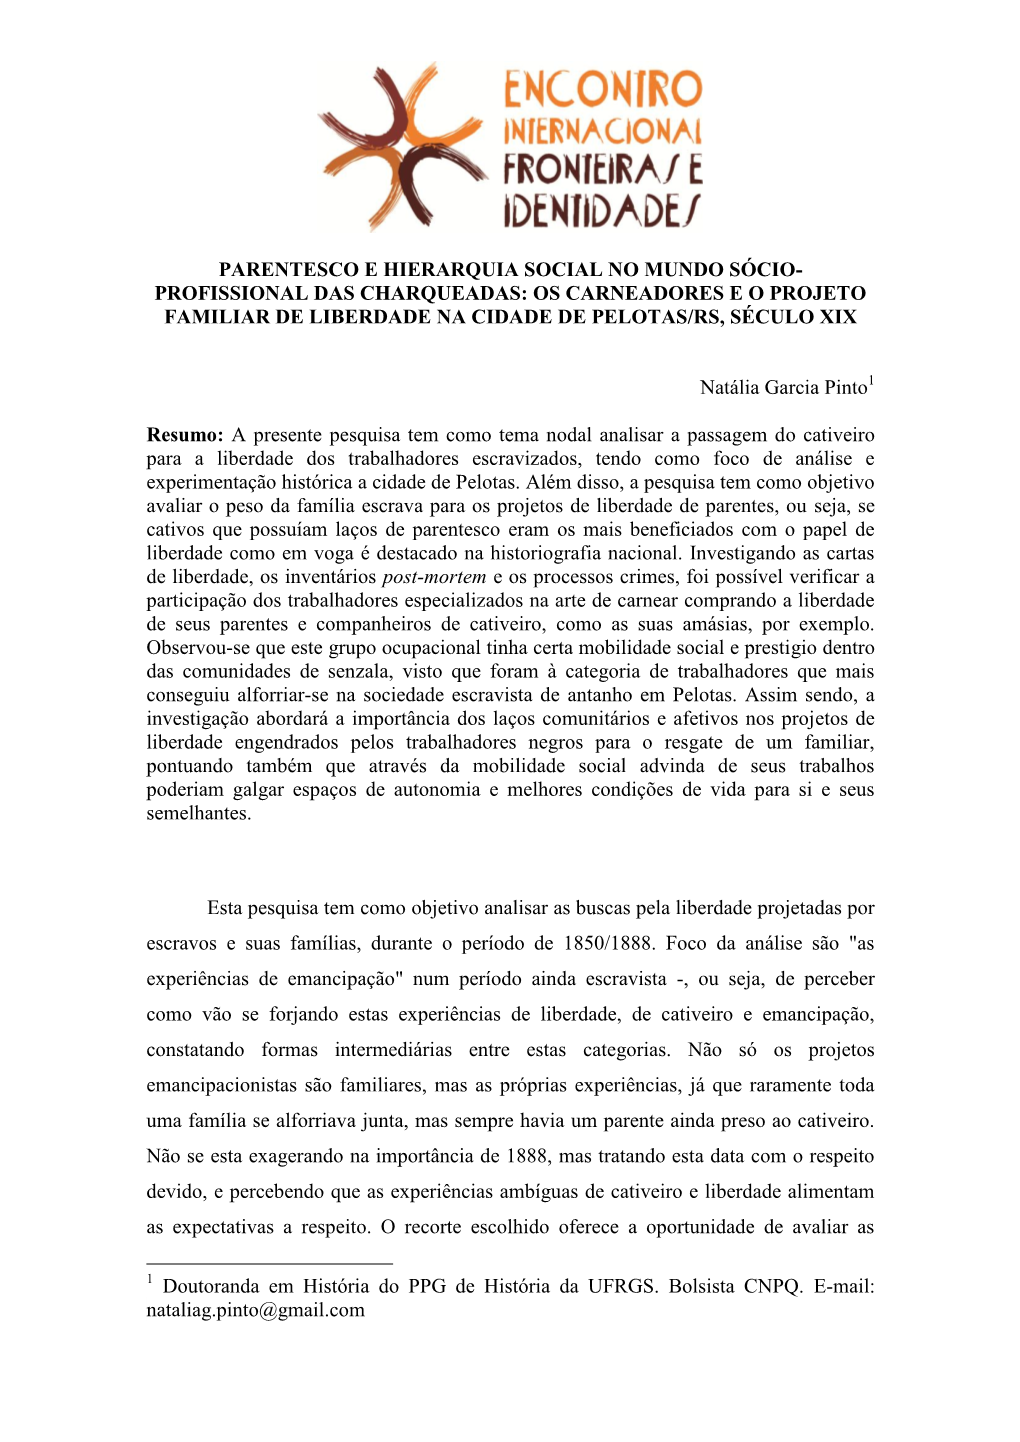 Os Carneadores E O Projeto Familiar De Liberdade Na Cidade De Pelotas/Rs, Século Xix